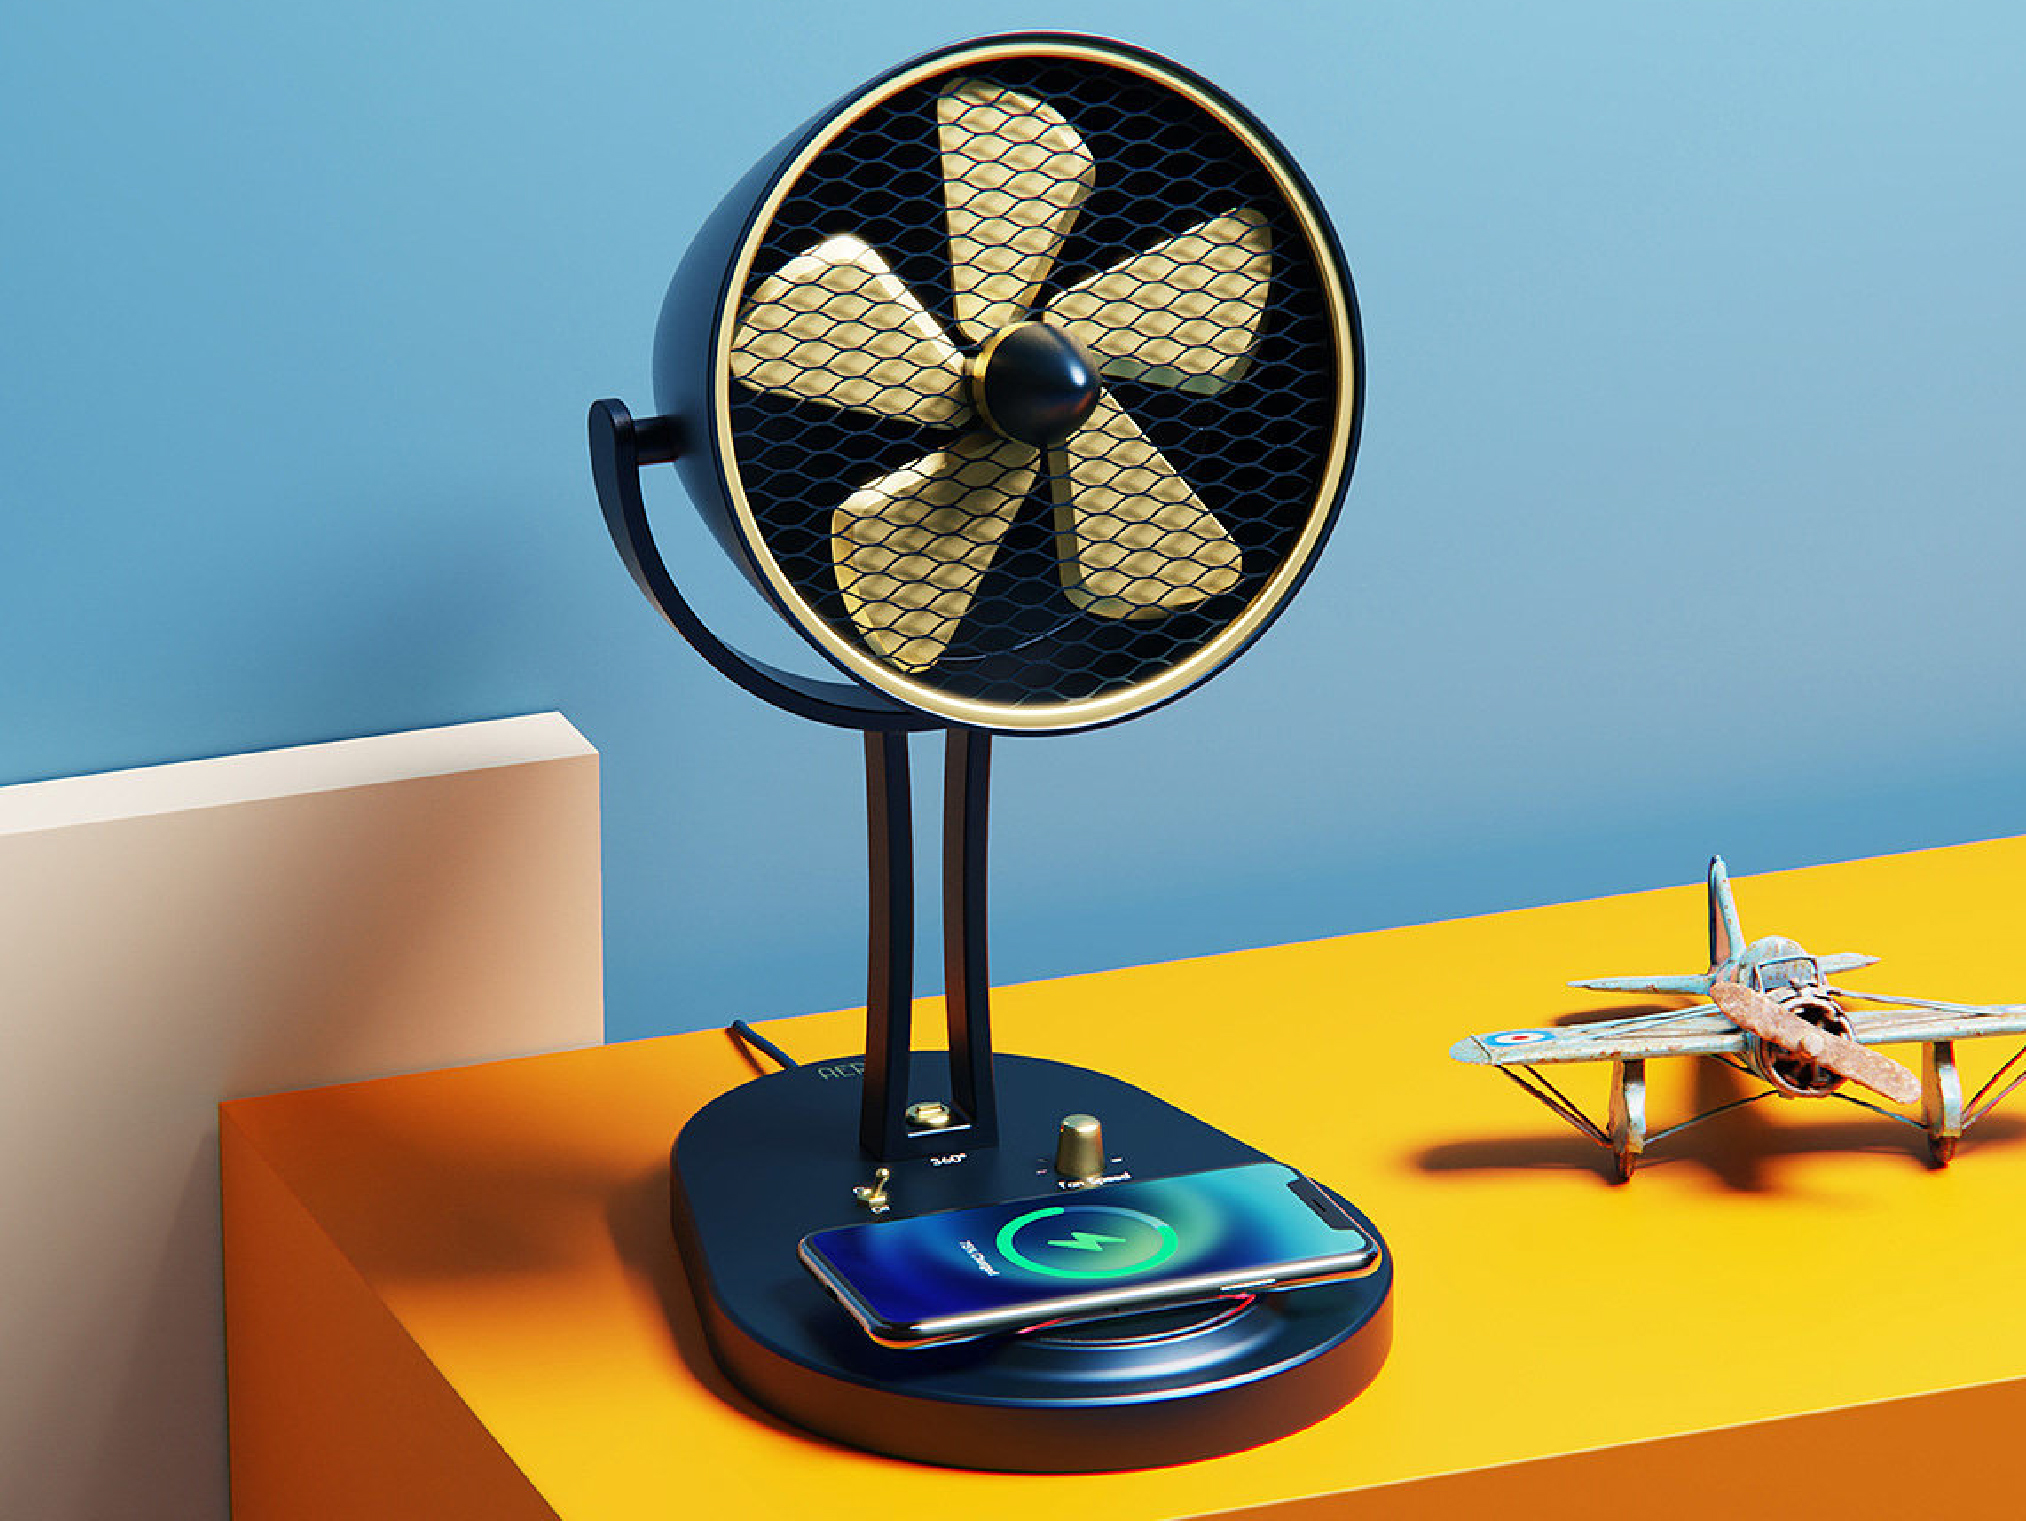 AERO -- 桌面友好型風扇，帶來美感與無線體驗